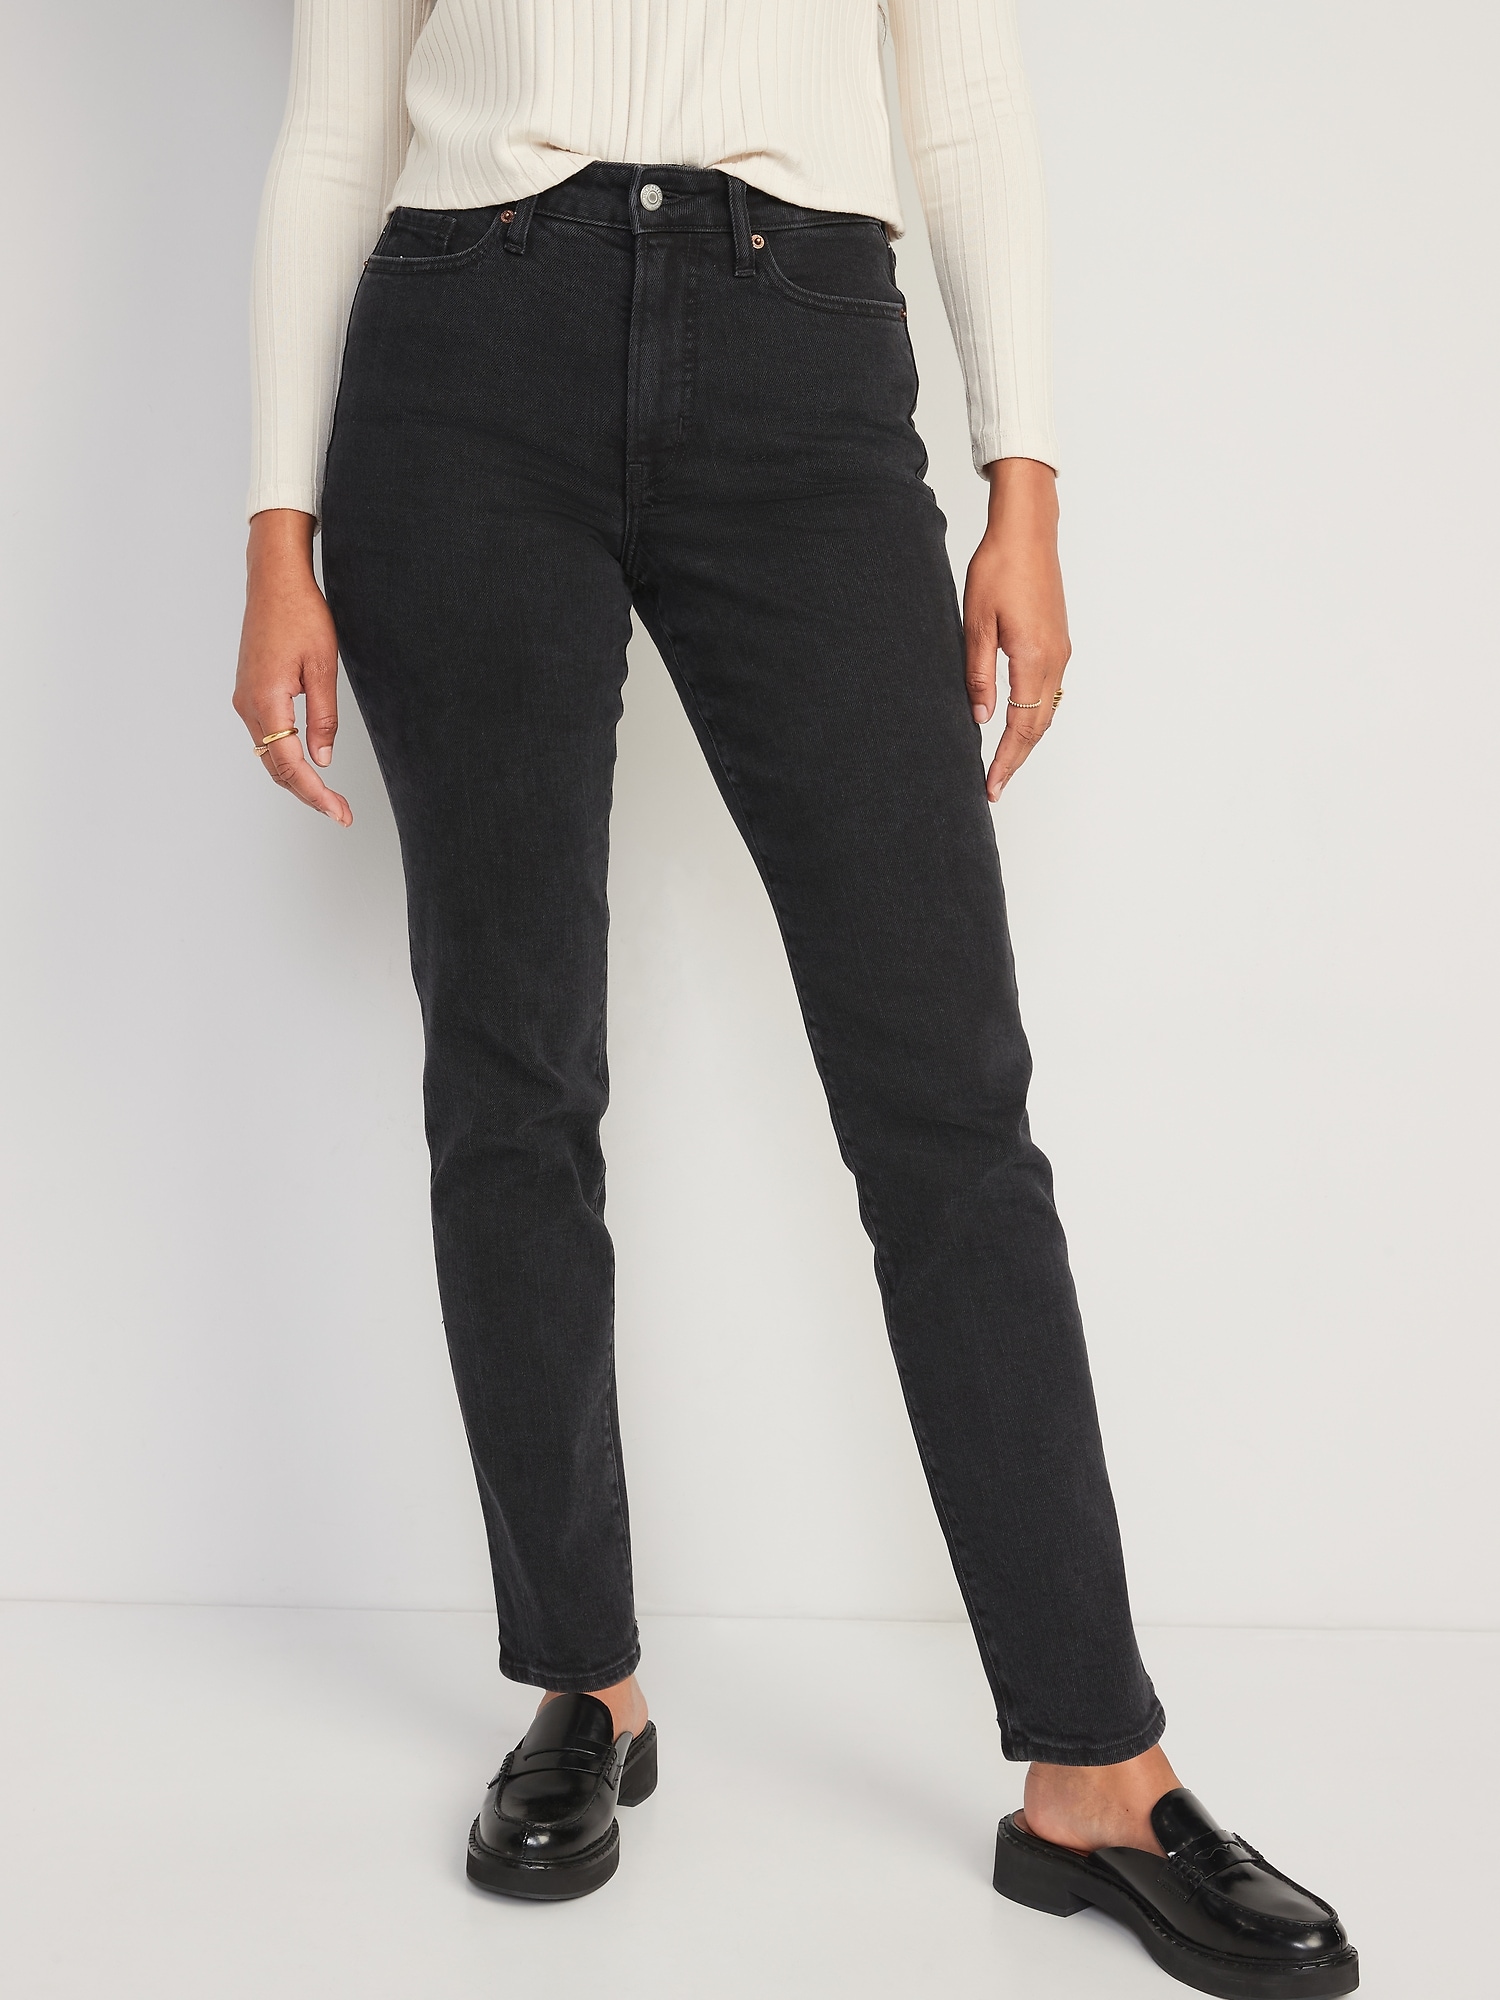 Old Navy - High-Waisted OG Straight Black Jeans for Women black